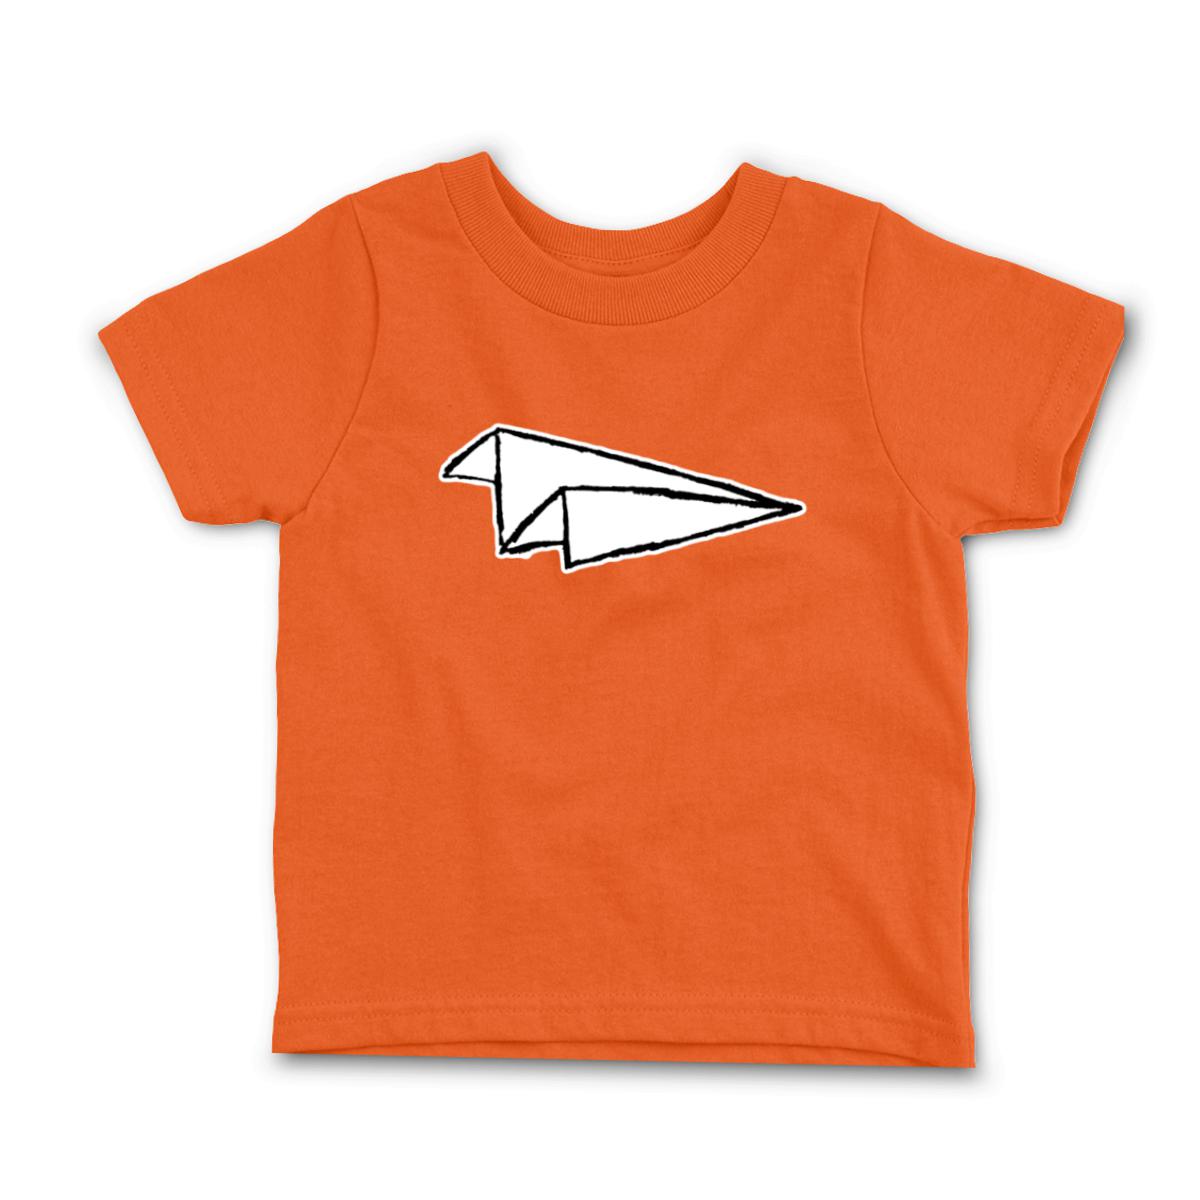 Airplane Sketch Toddler Tee 56T orange